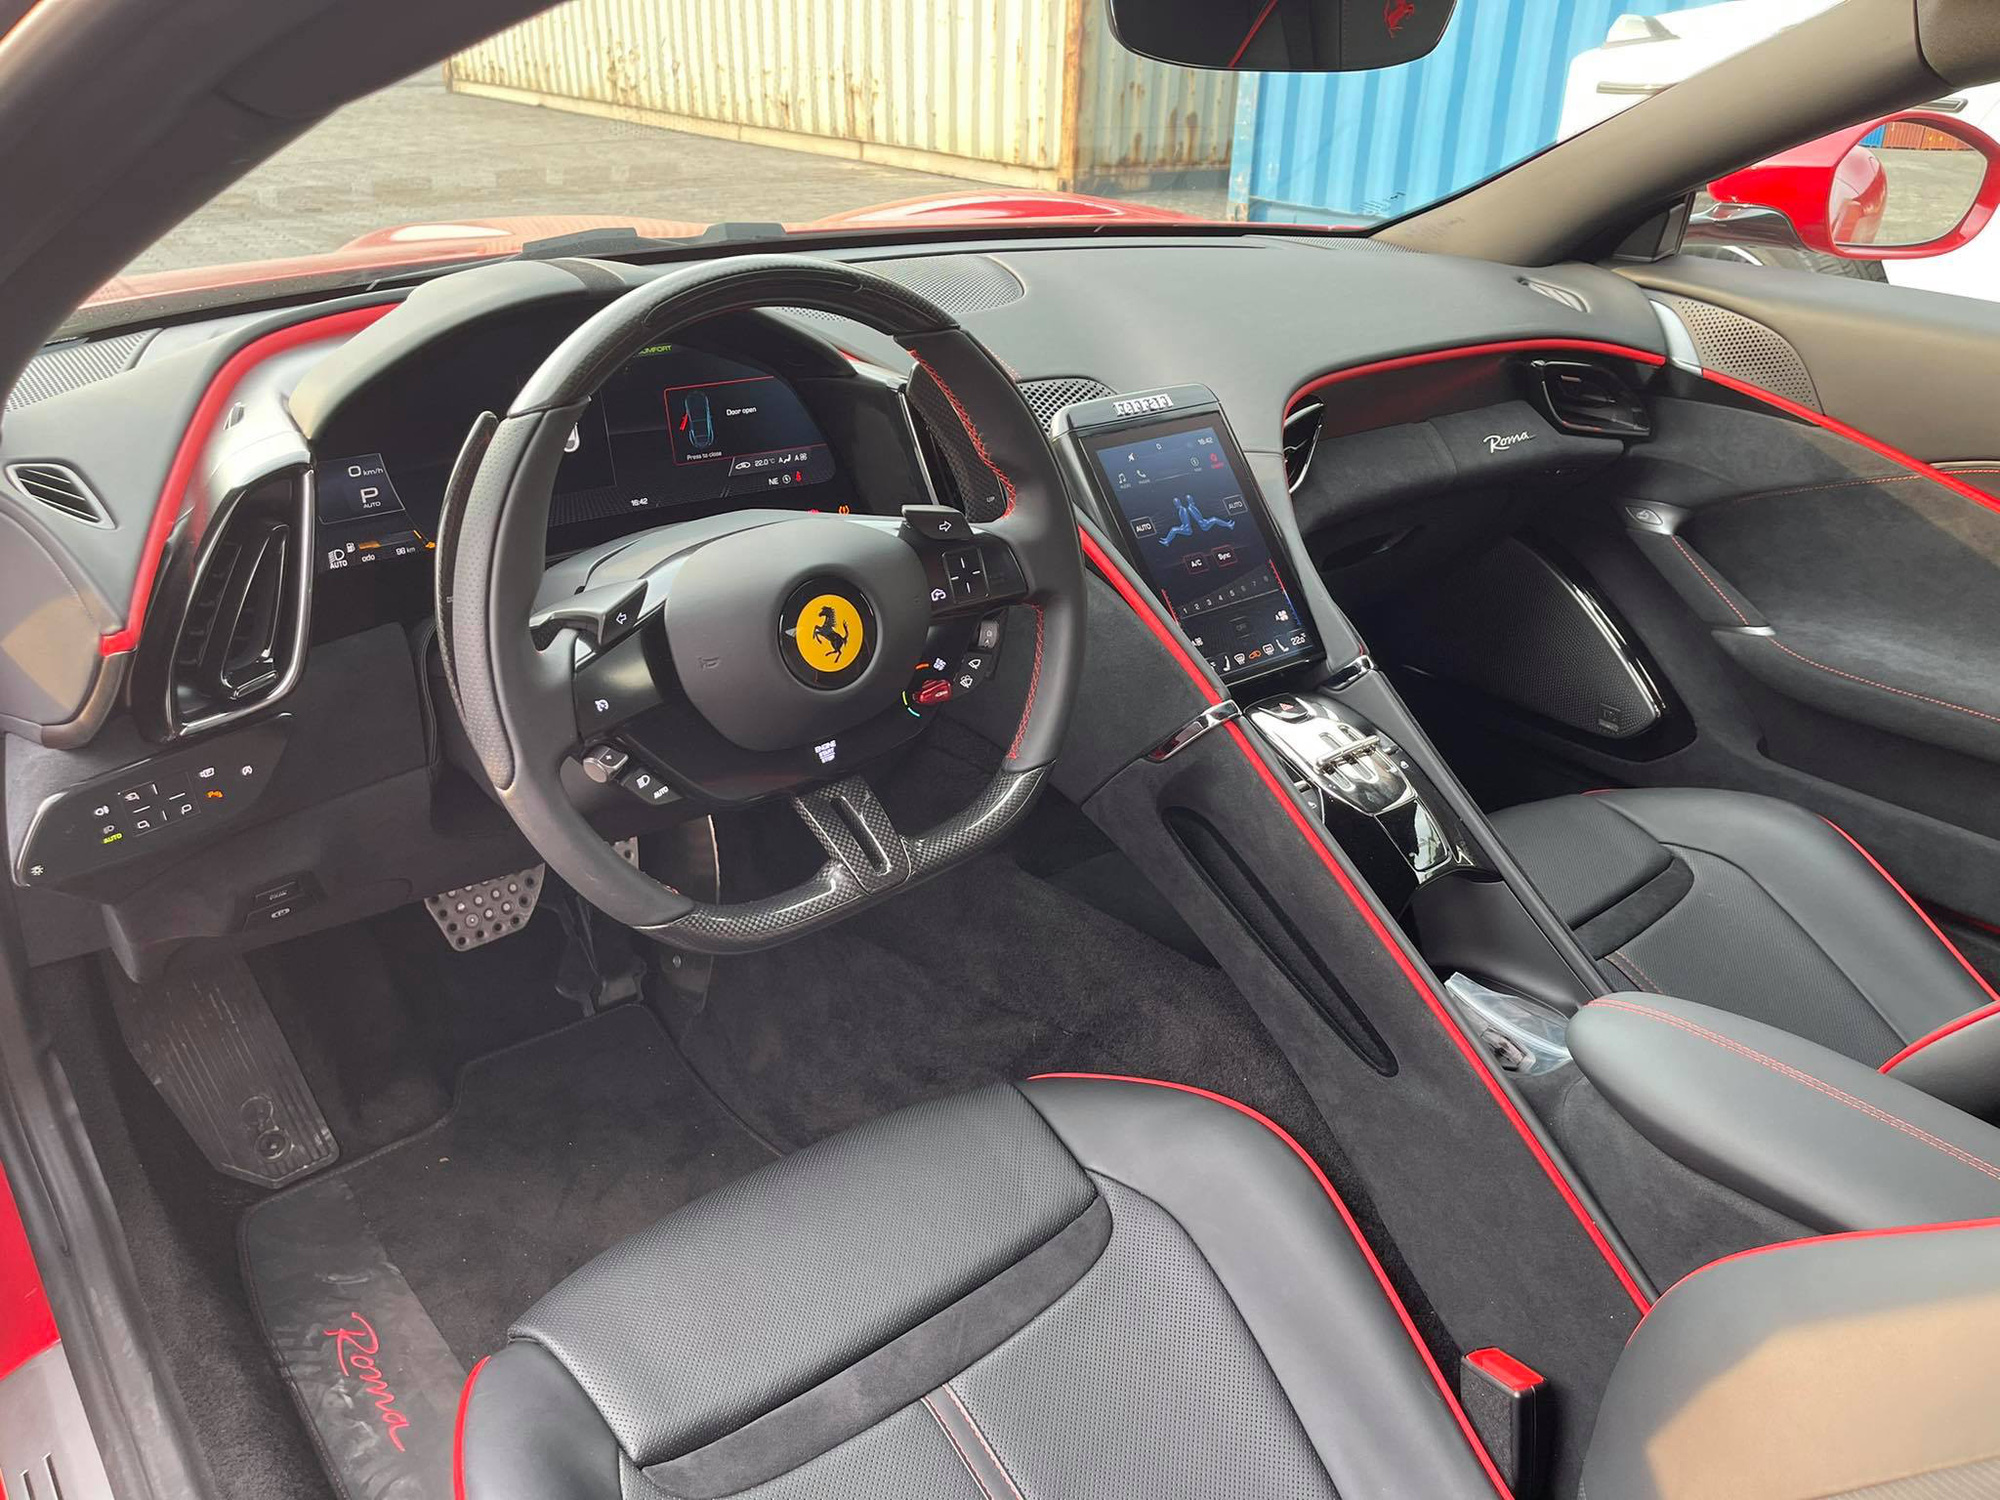 Khui công Ferrari Roma thứ 2 tại Việt Nam: Không chỉ khác ở màu sơn, nội thất cũng mới lạ so với chiếc đầu - Ảnh 4.